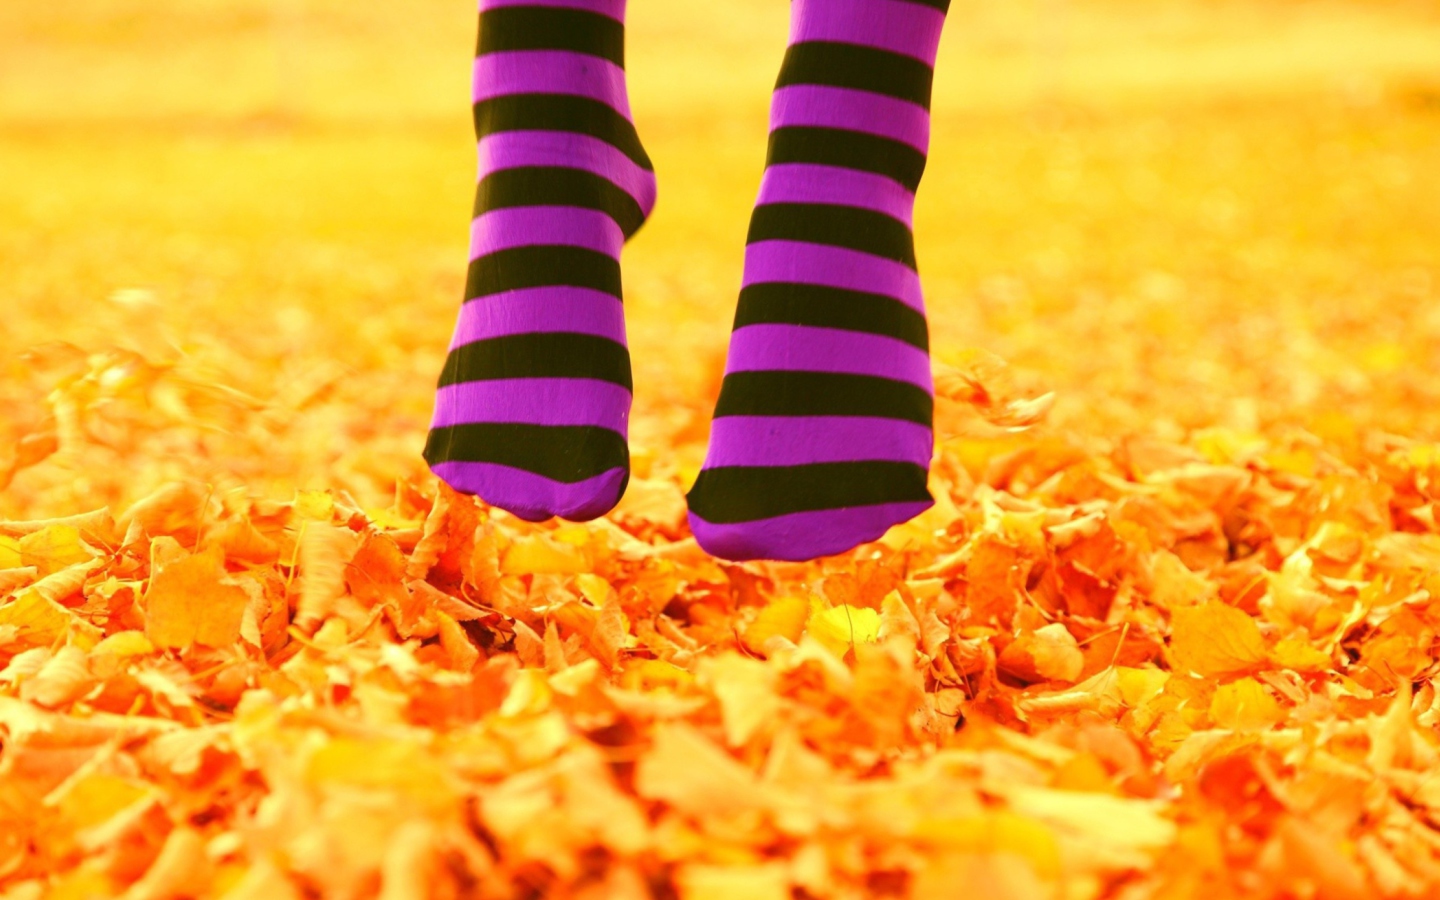 Обои Purple Feet And Yellow Leaves 1440x900